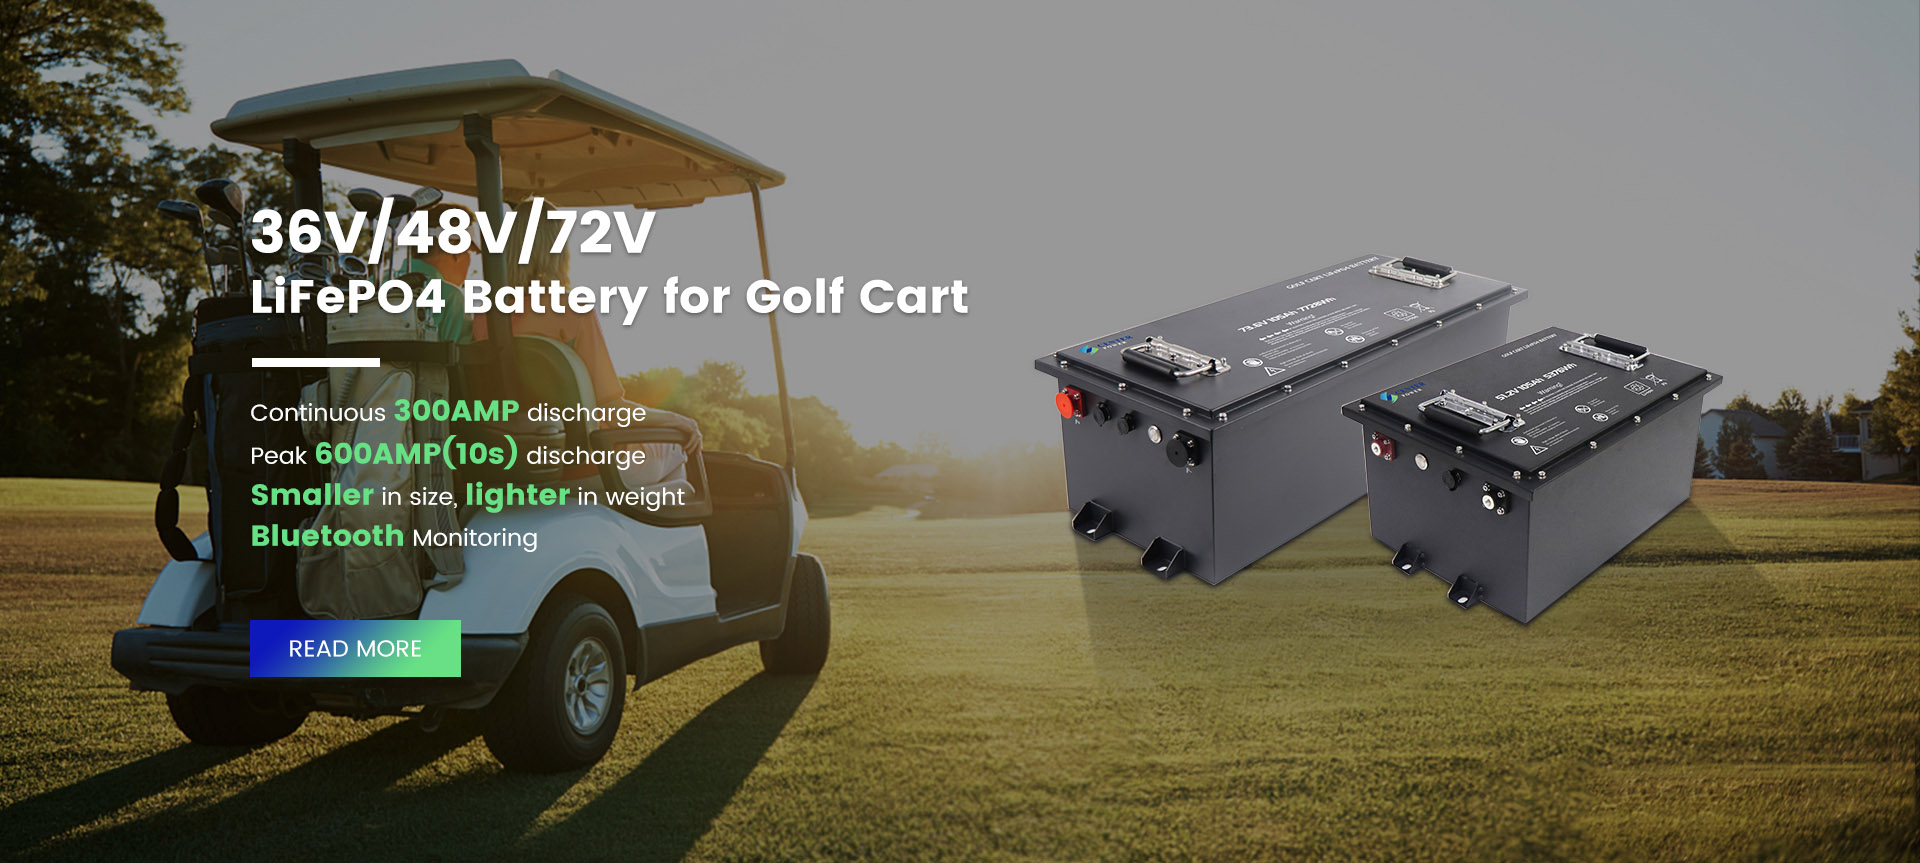 Batería LifePo4 para carrito de golf